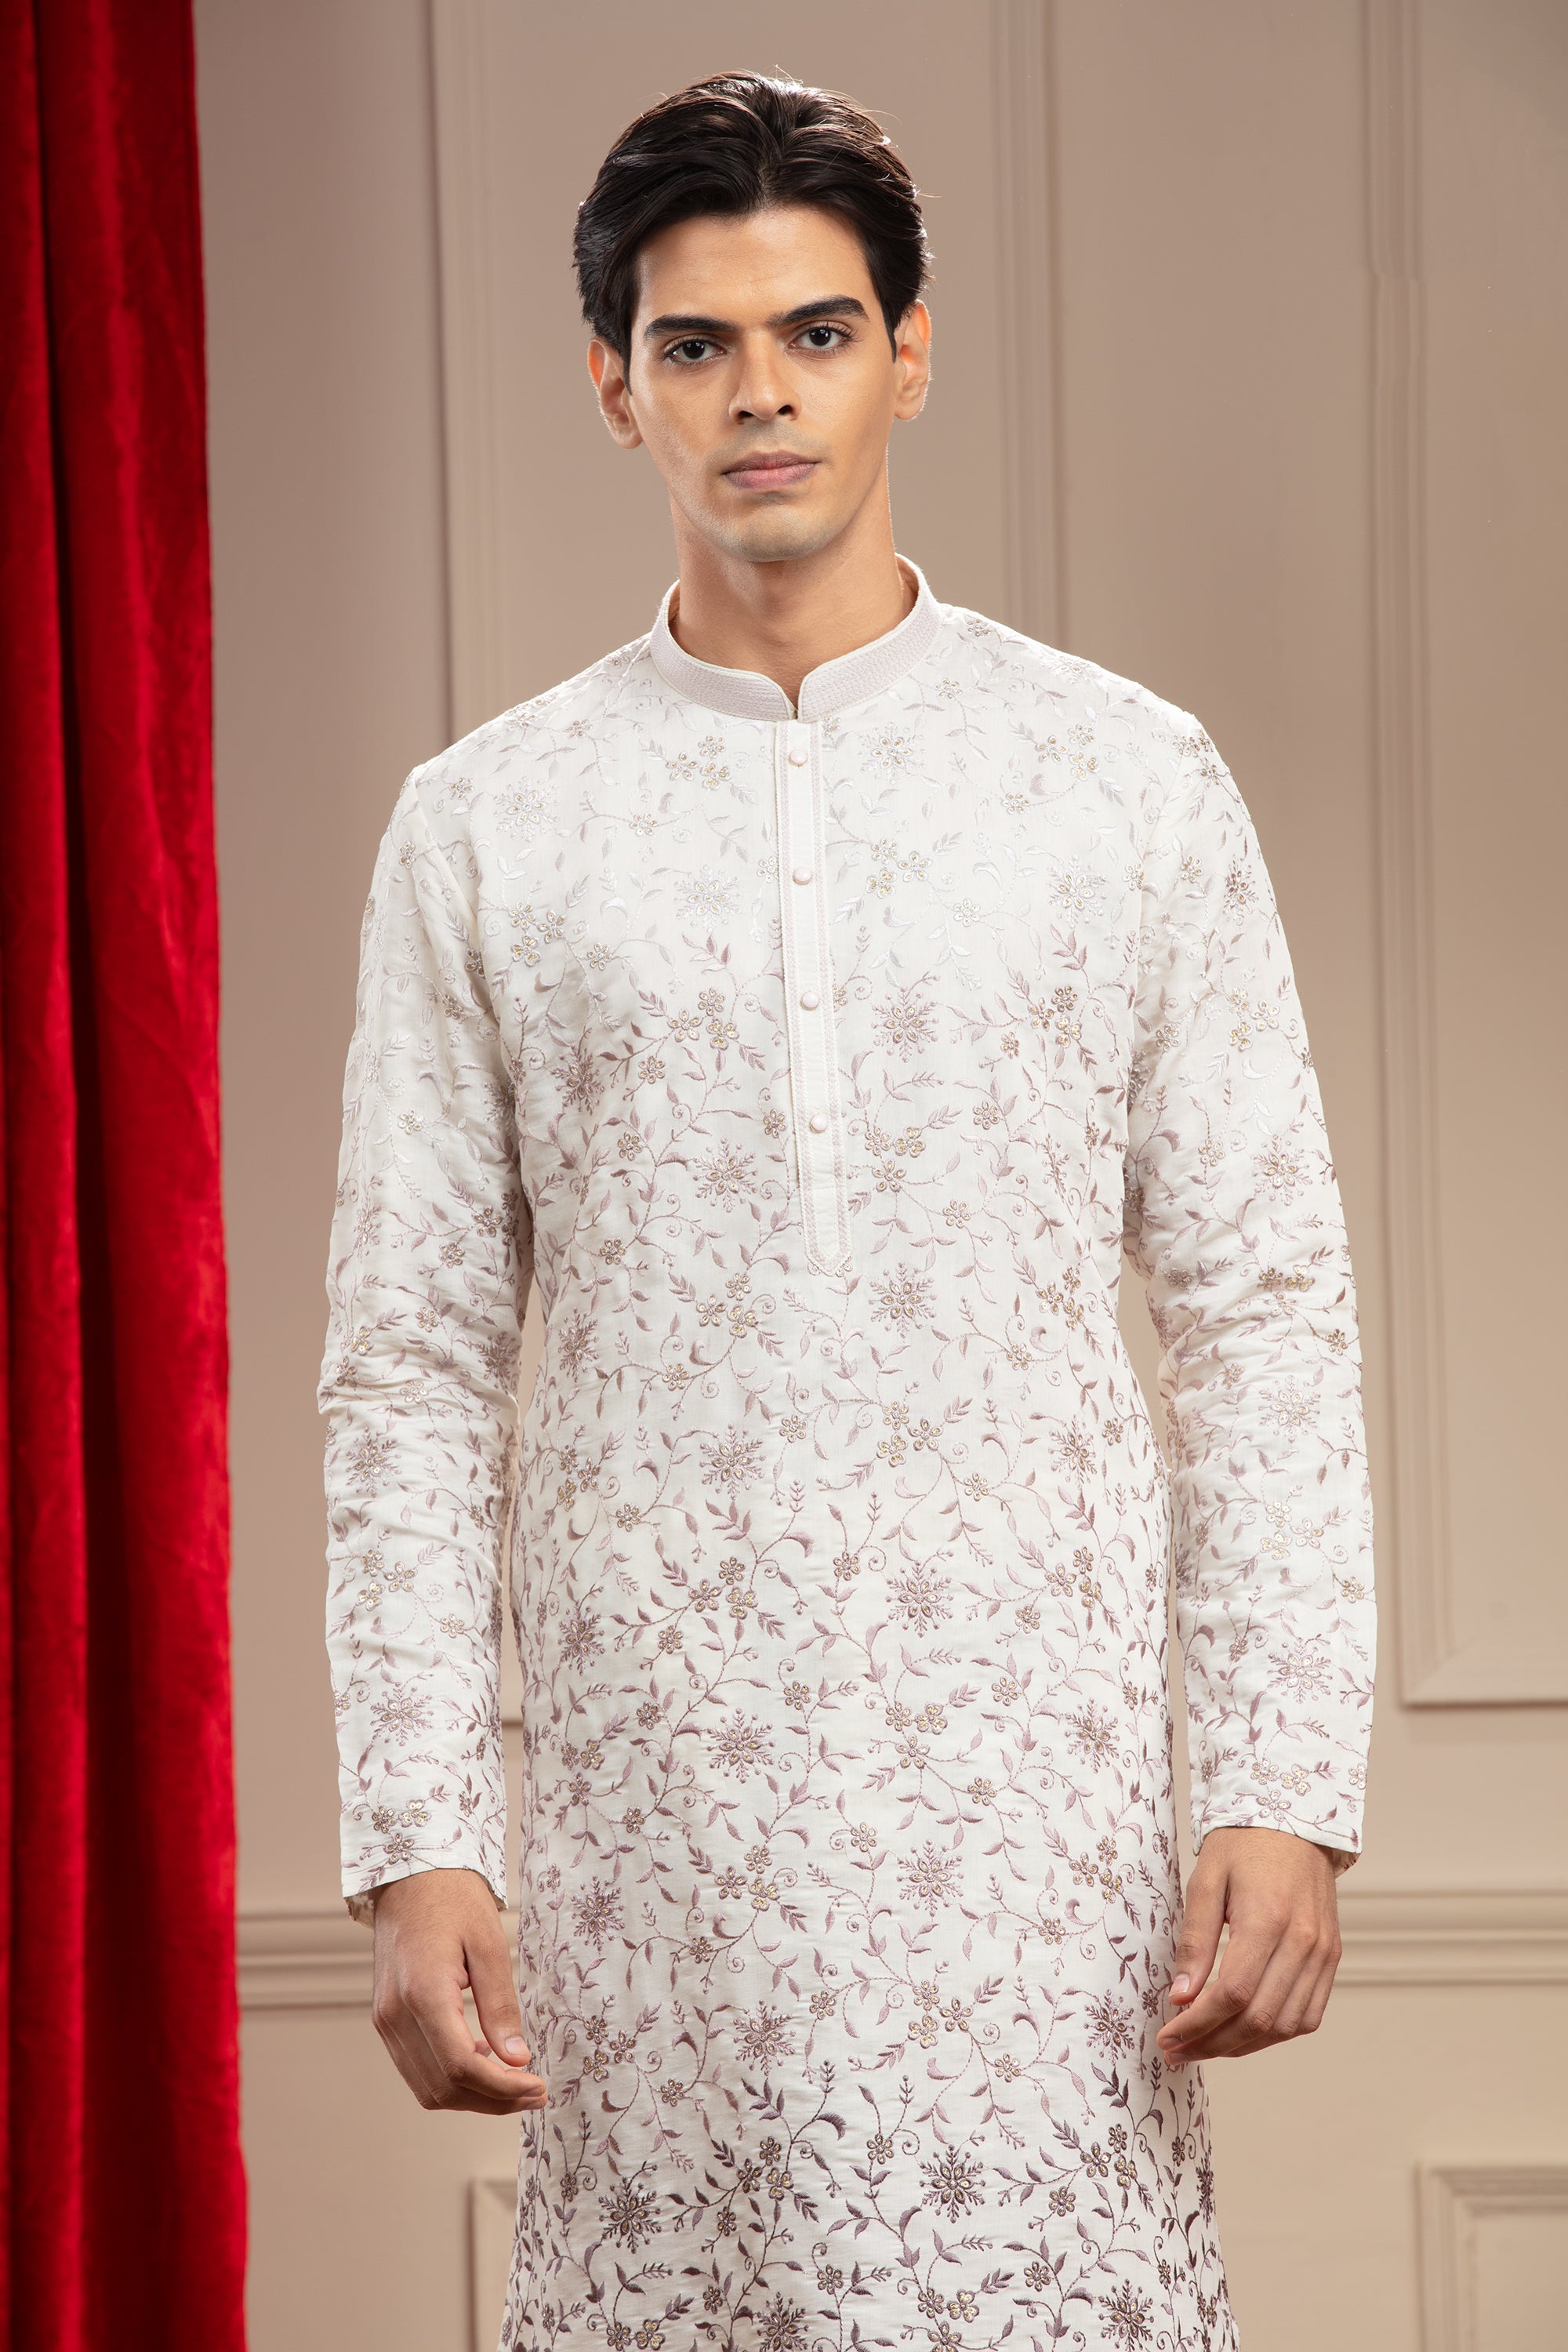 Silverish White kurta pajama with sequin work